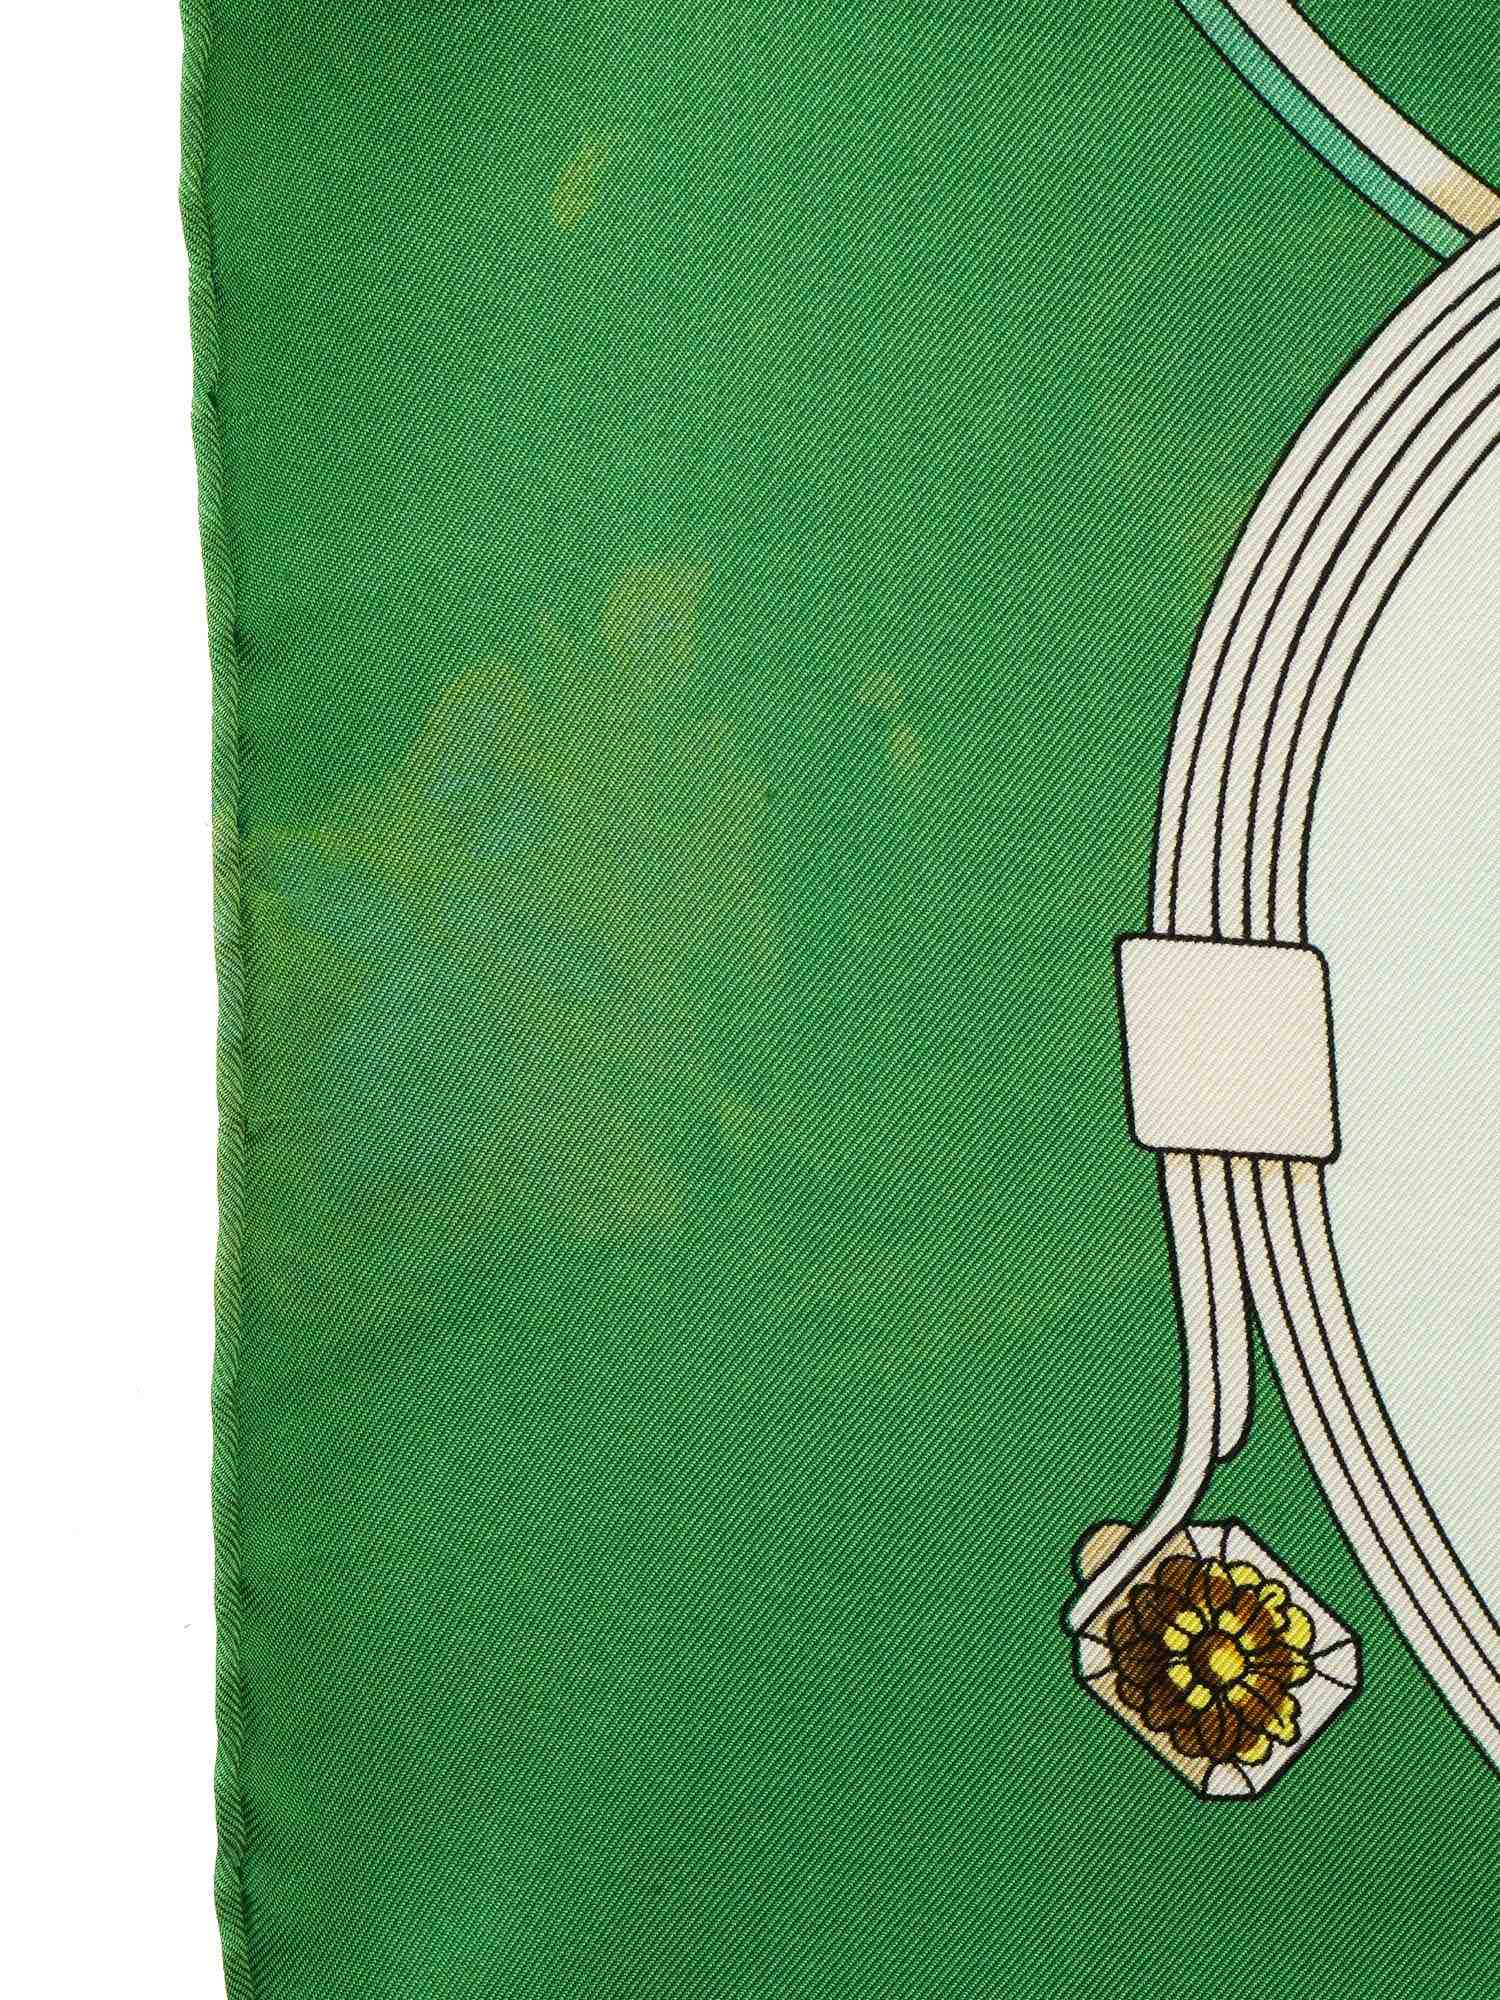 VINTAGE HERMES SPRINGS SILK SCARF IN GREEN IOB PIC-8